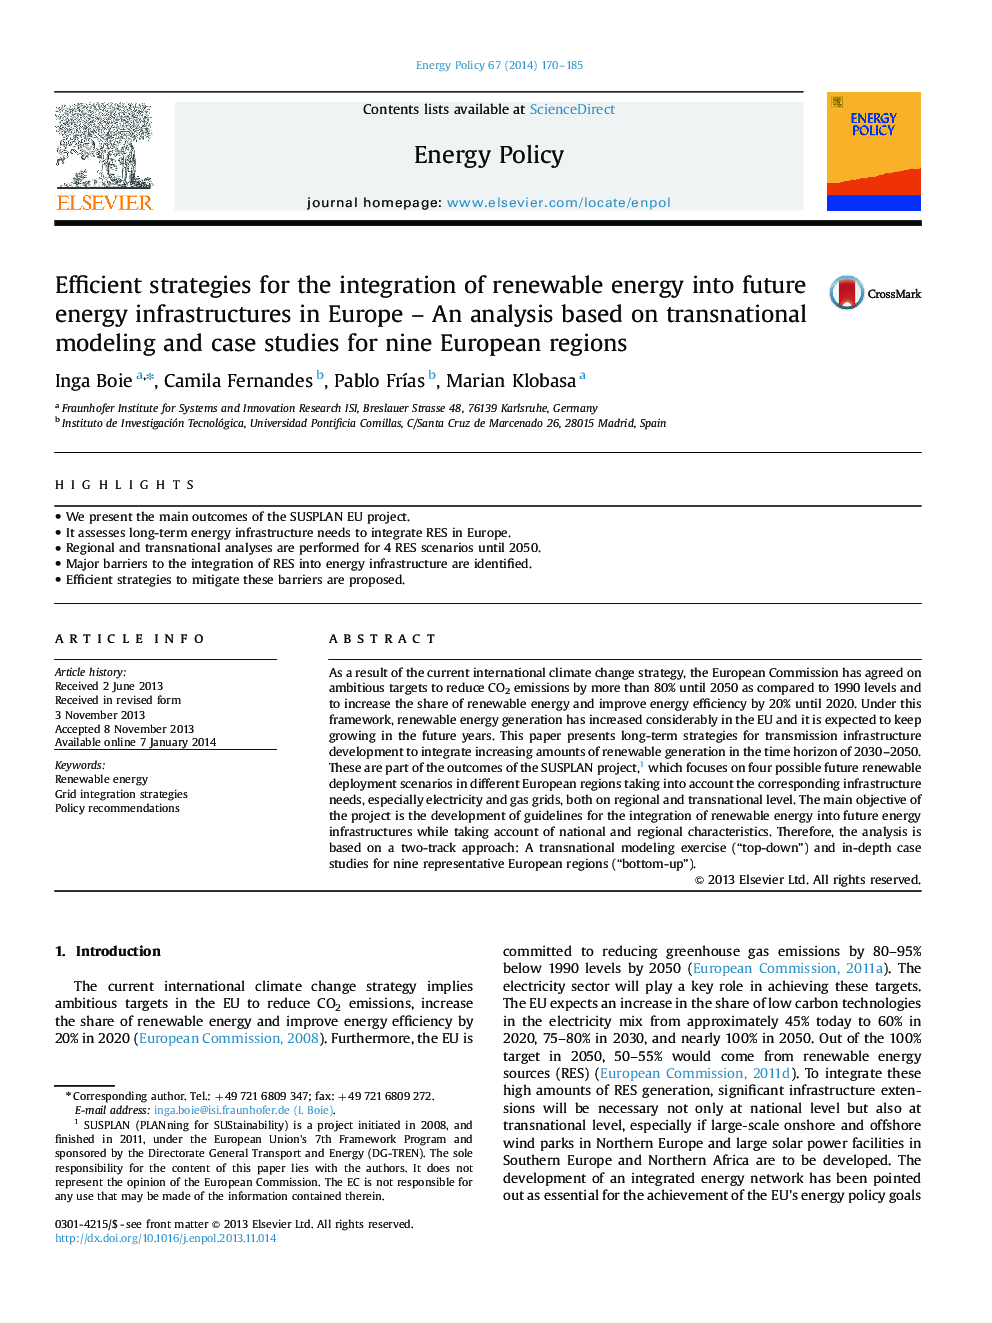 استراتژی های کارآمد برای ادغام انرژی های تجدید پذیر در زیرساخت های انرژی آینده در اروپا - تجزیه و تحلیل بر اساس مدل سازی فراملی و مطالعات موردی برای نه منطقه اروپا 